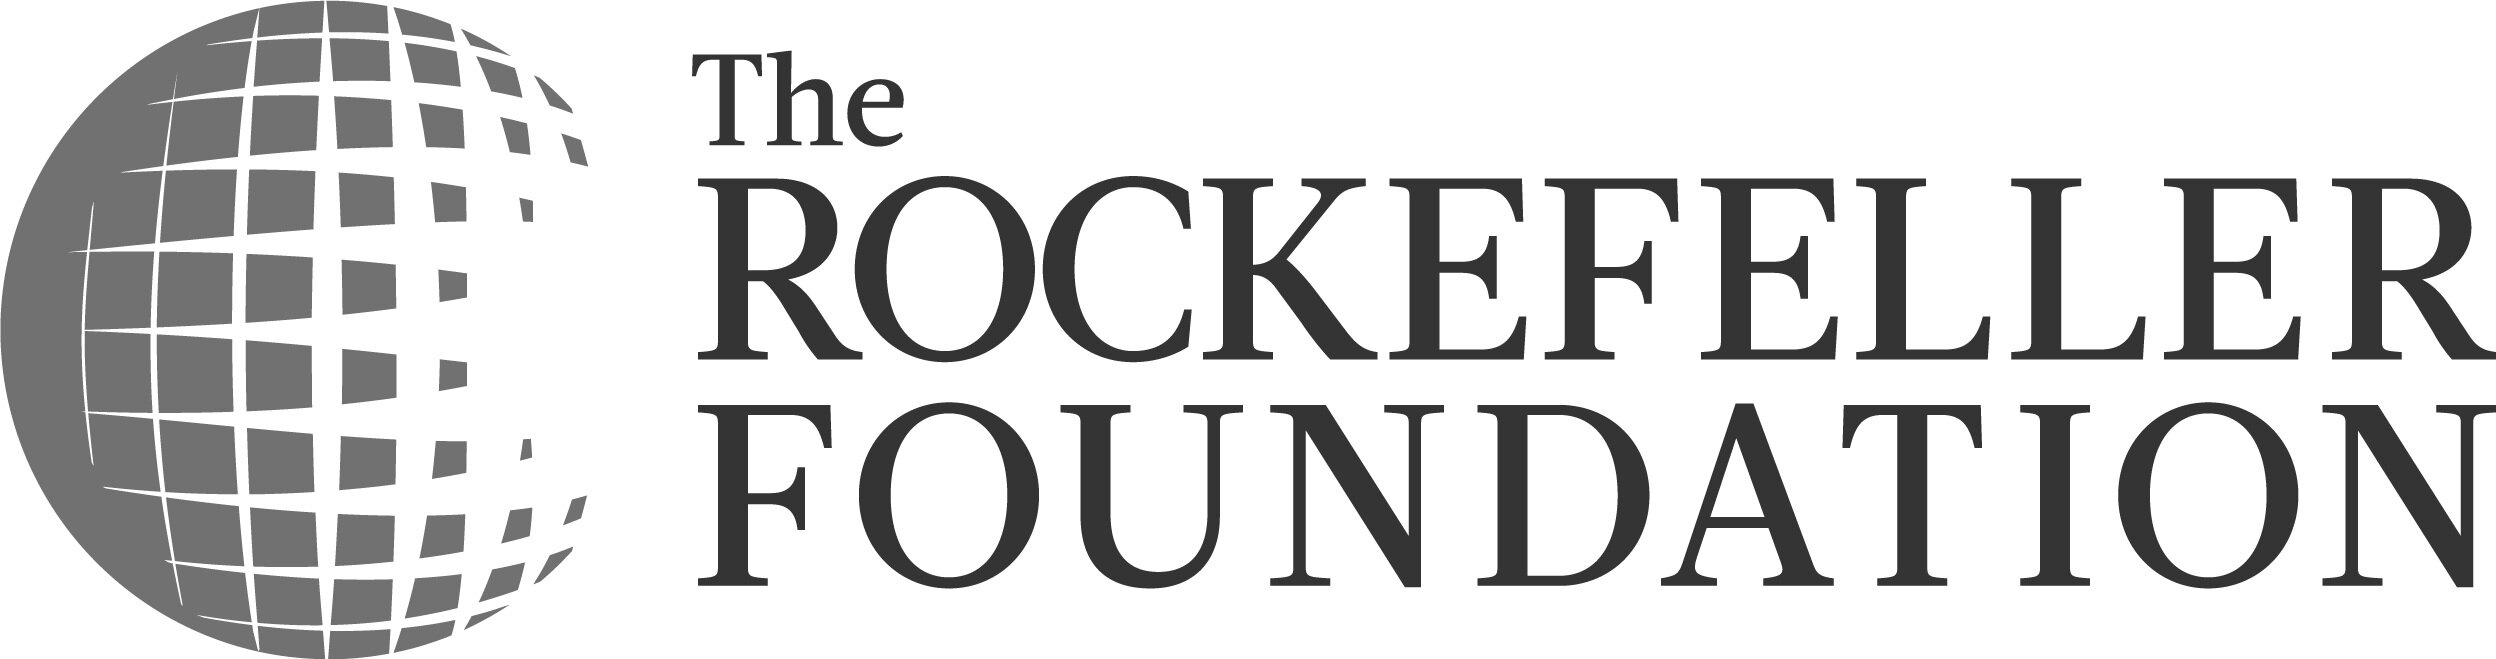 The_Rockefeller_Foundation_Logo.jpg